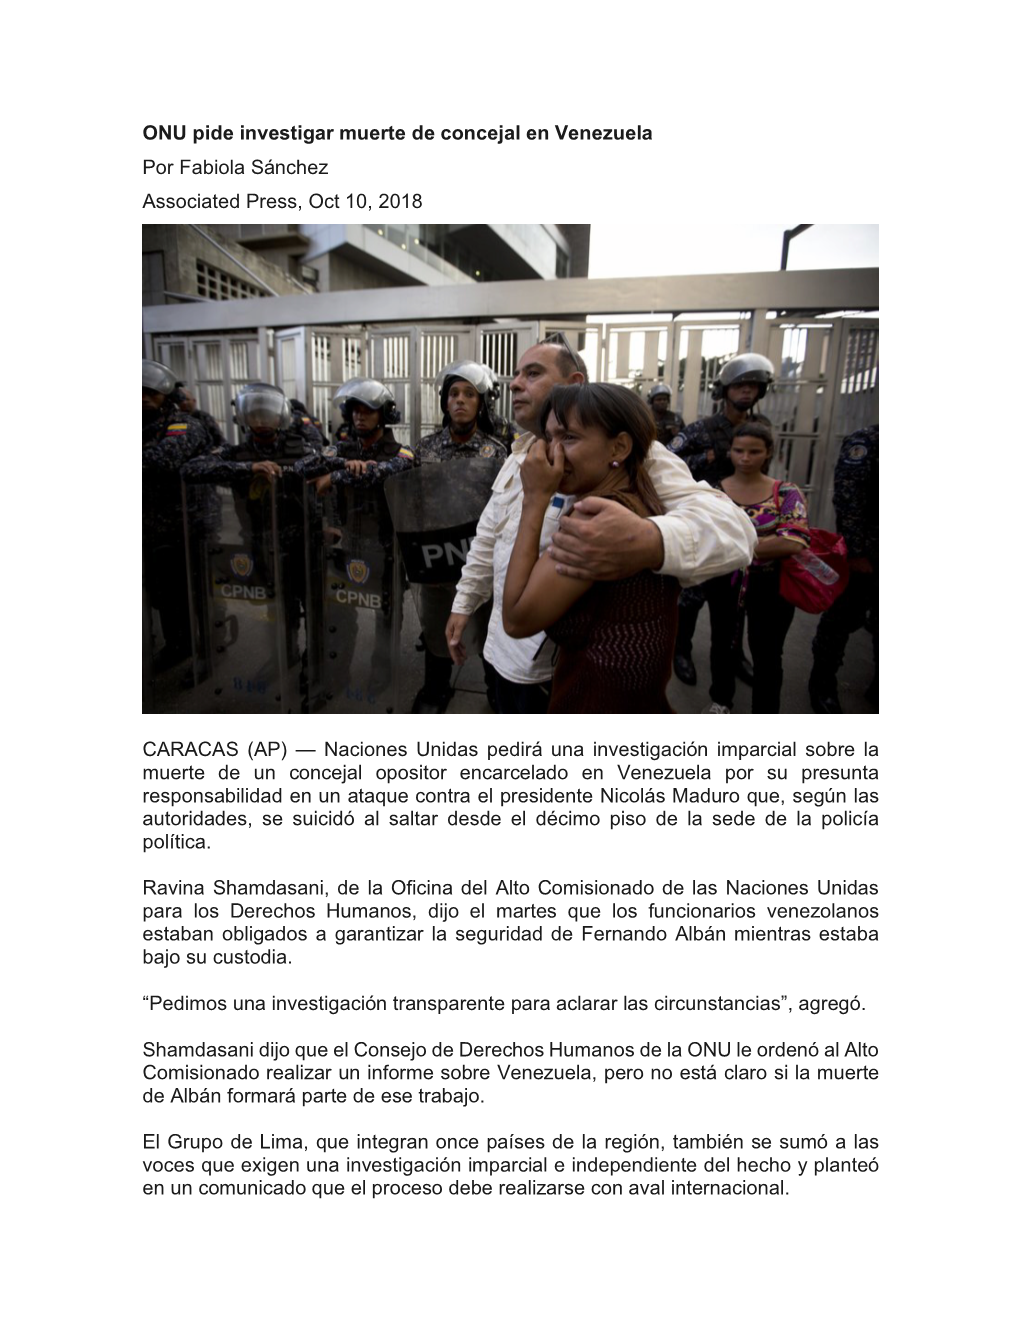 ONU Pide Investigar Muerte De Concejal En Venezuela Por Fabiola Sánchez Associated Press, Oct 10, 2018